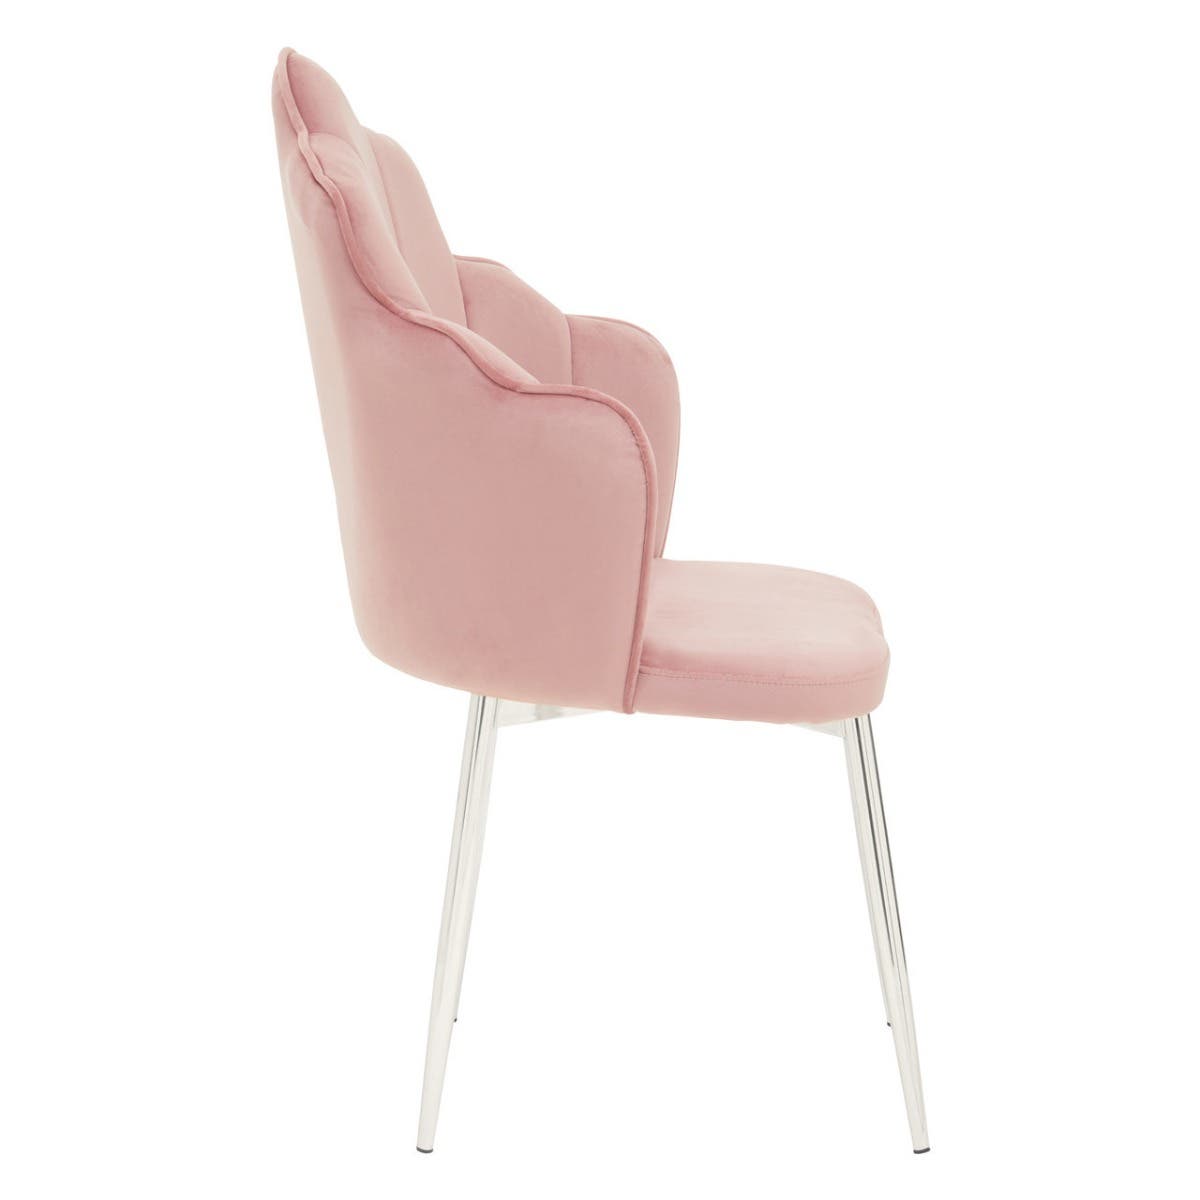 Tian Pink Velvet Dining Chair